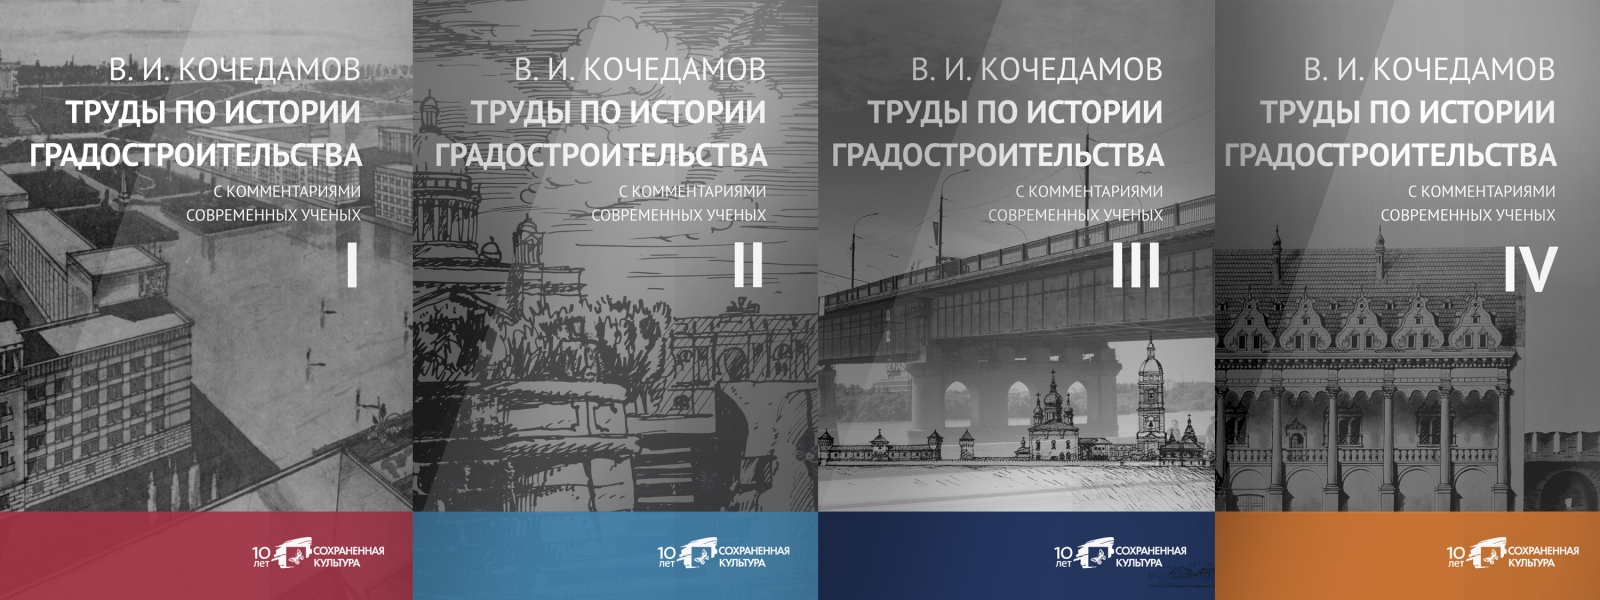 work-Печатное и электронное издание в 4 томах «В.И. Кочедамов. Труды по истории градостроительства с комментариями современных ученых»